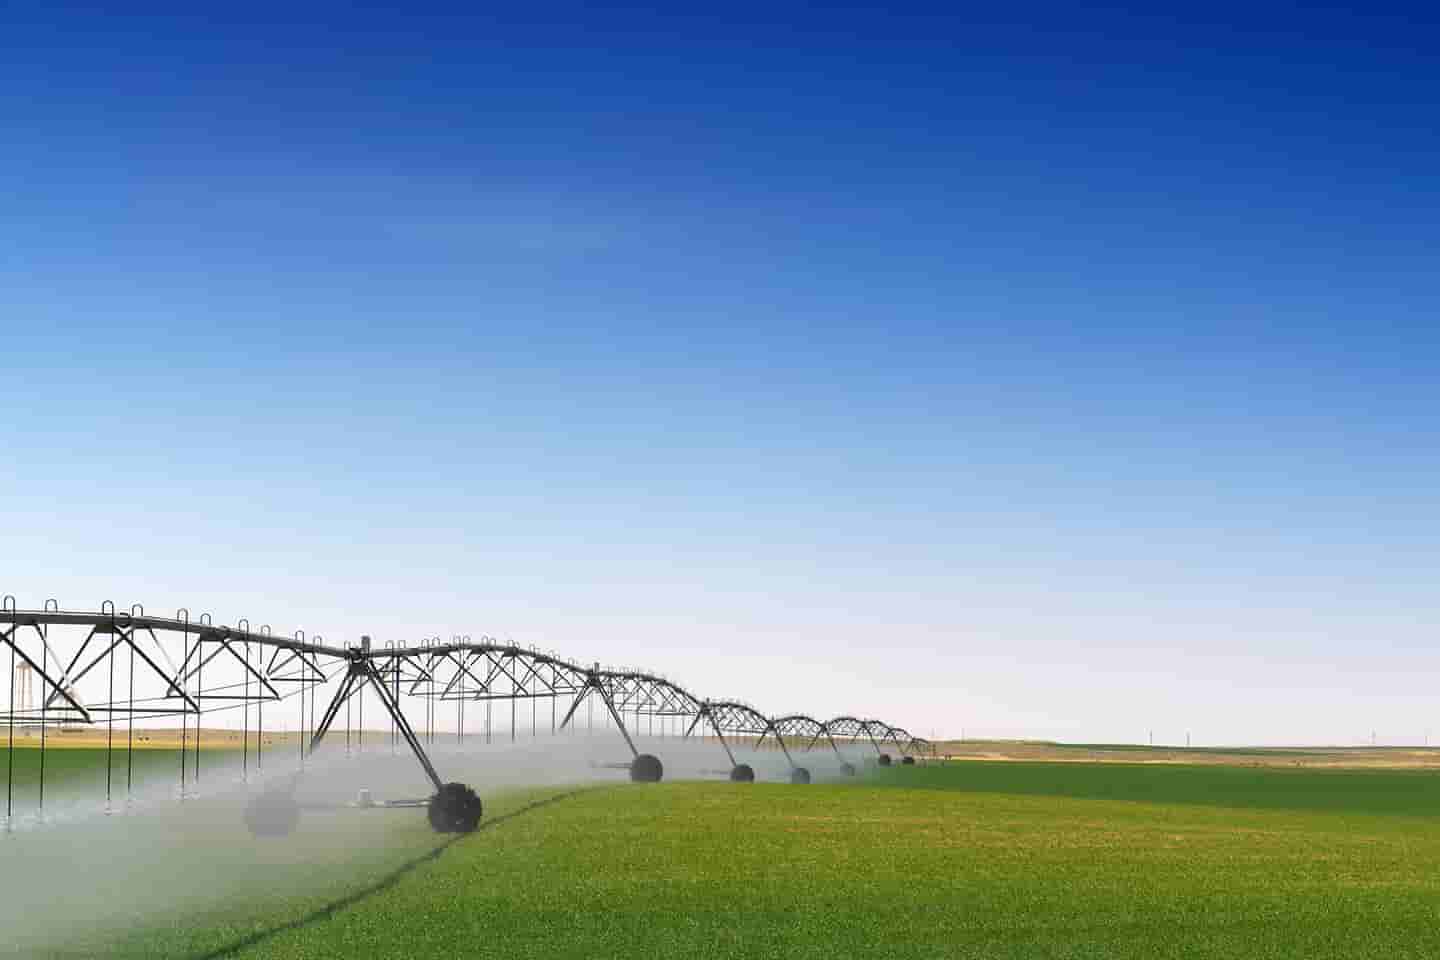 Irrigators